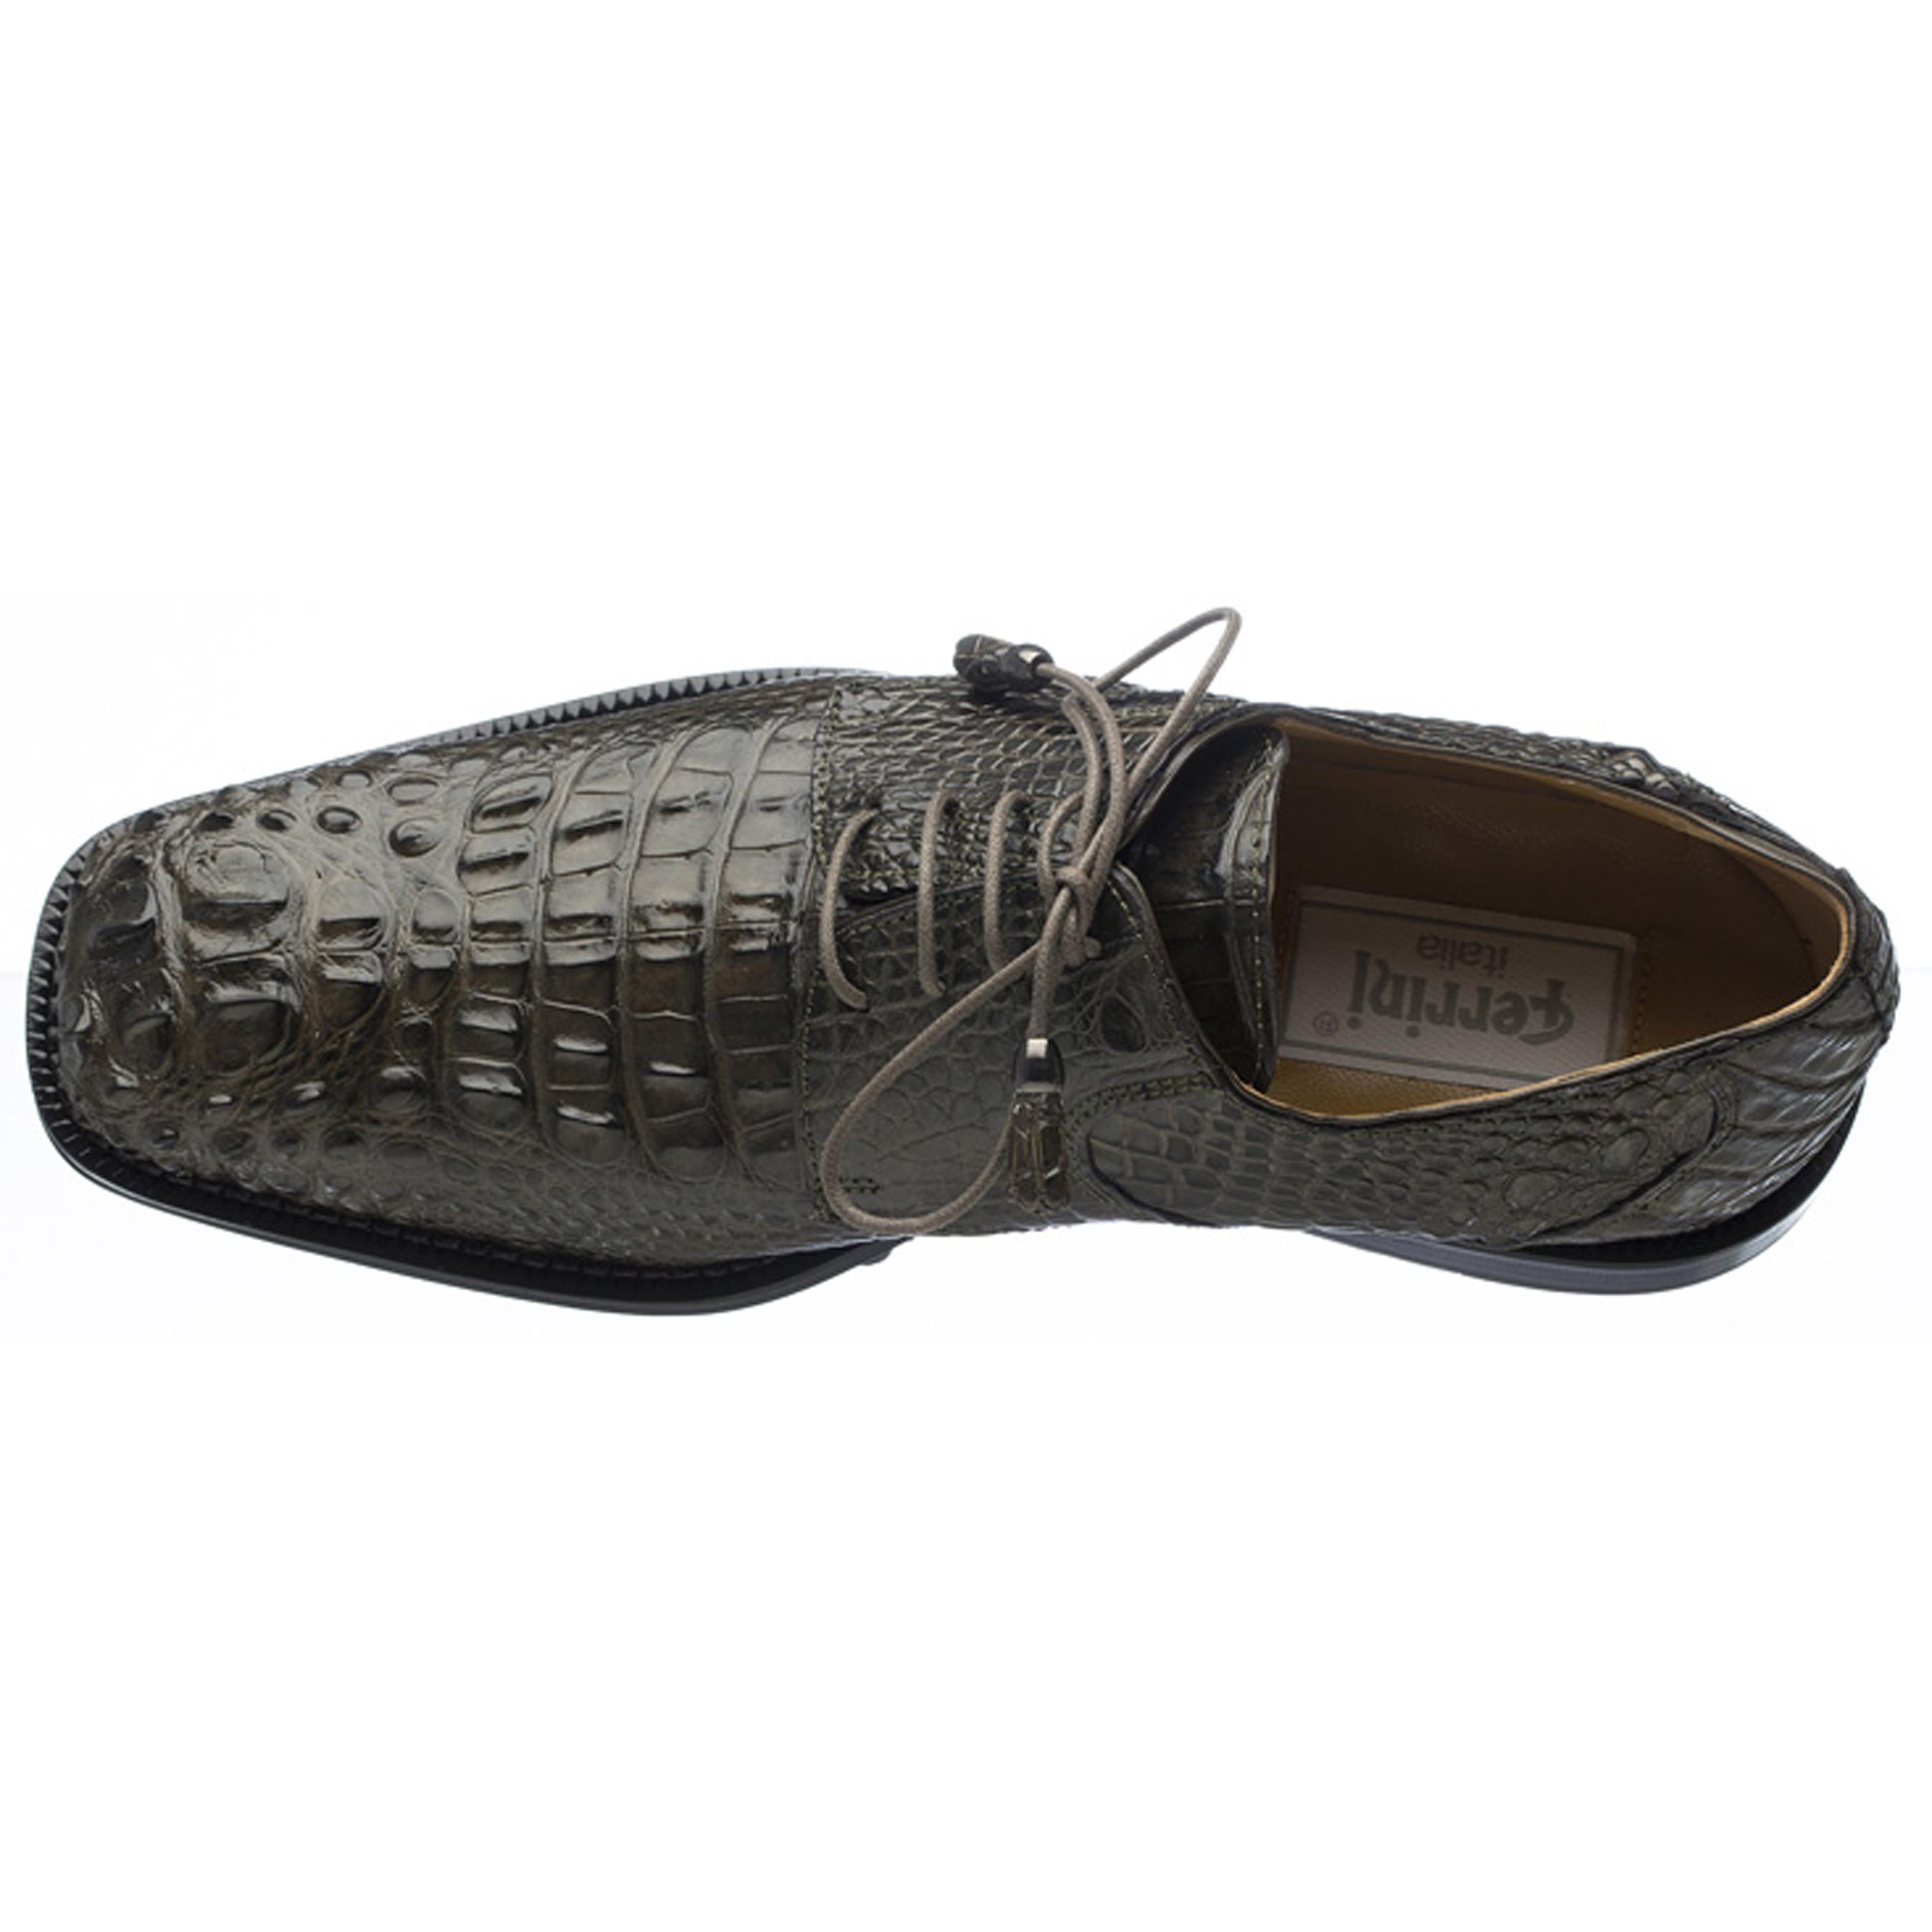 Men's Ferrini Brand Shoe Men's Burgundy Color Alligator Shoe